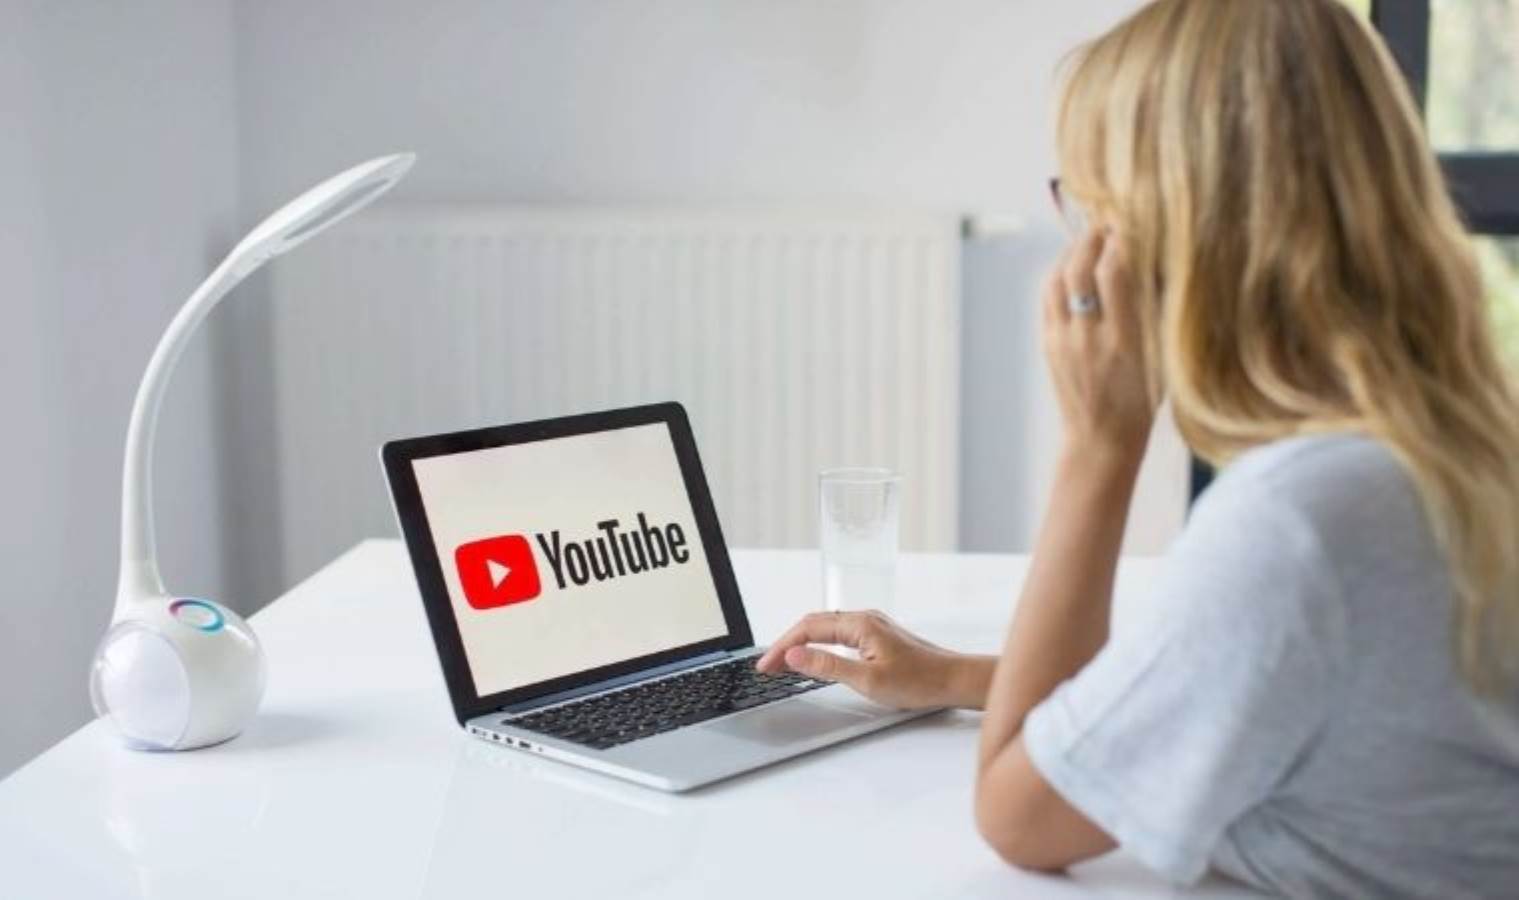 YouTube'dan size benzeyen yapay zeka içeriklerini kaldırmak mümkün - Son Dakika Bilim Teknoloji Haberleri | Cumhuriyet